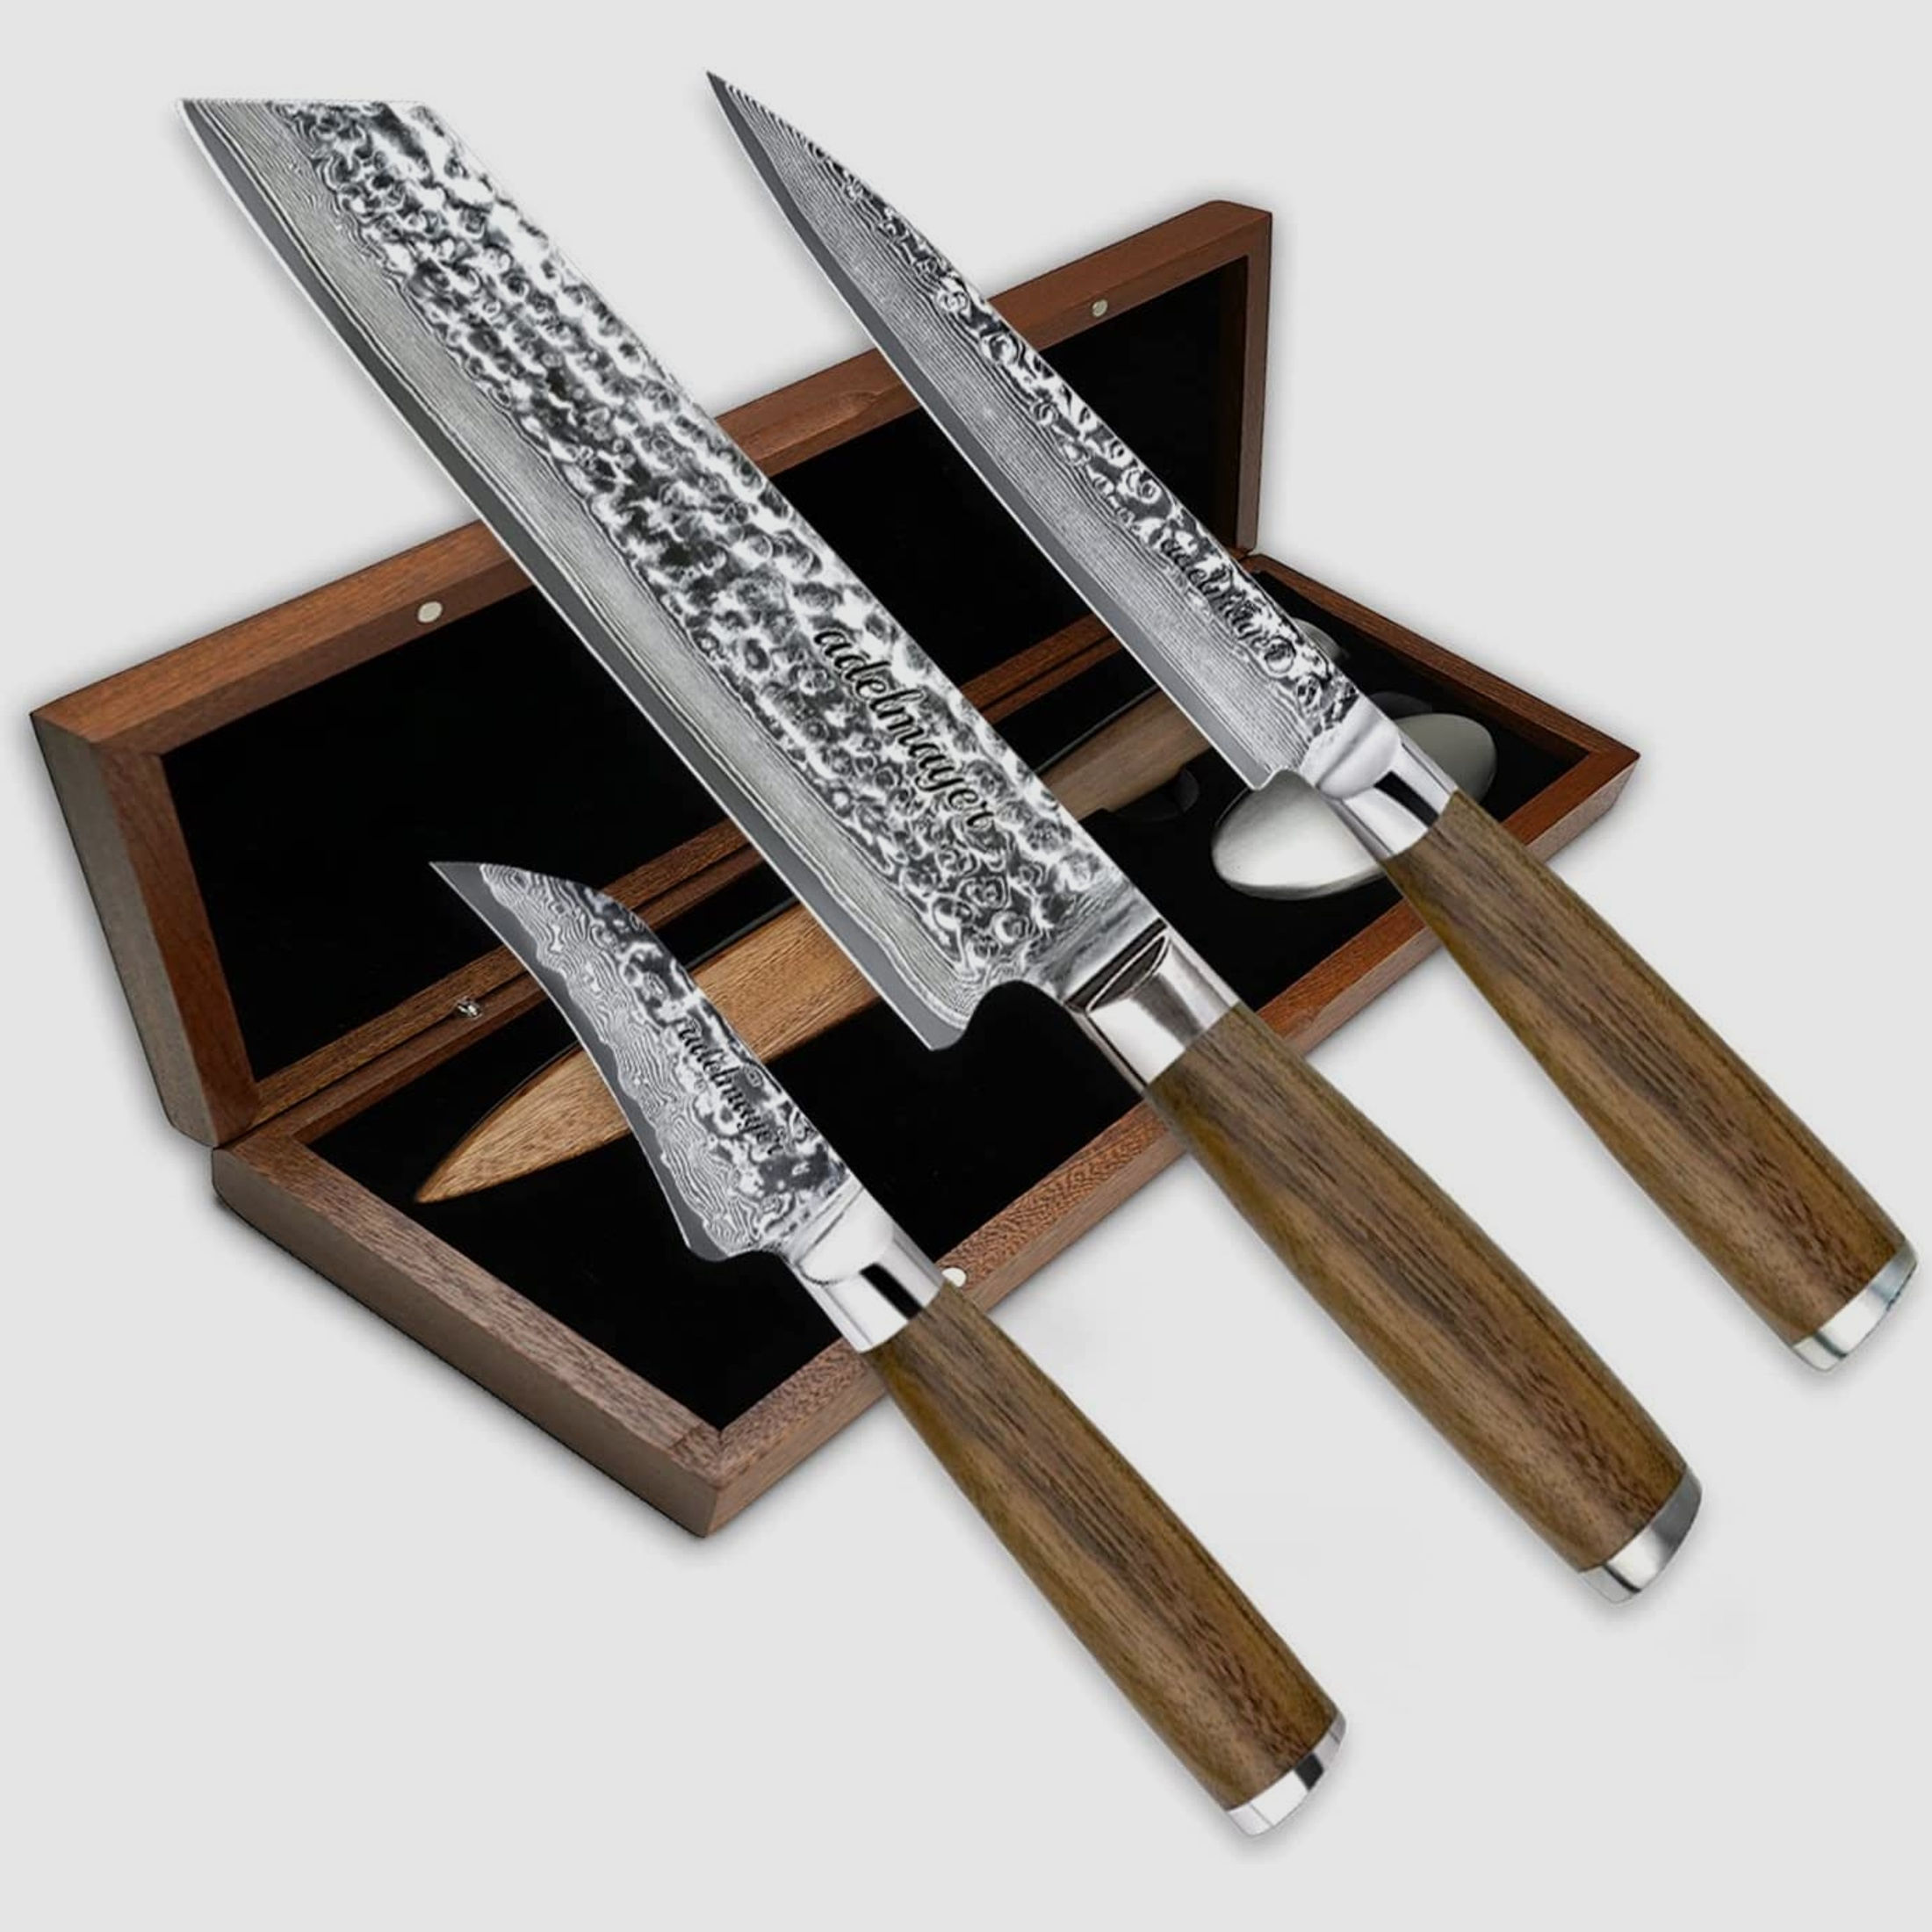 adelmayer® Damastmesser Set KAMAKURA - 3-teiliges Messerset aus japanischem Damast-Stahl: Kiritsuke Messer, Allzweckmesser & Schälmesser